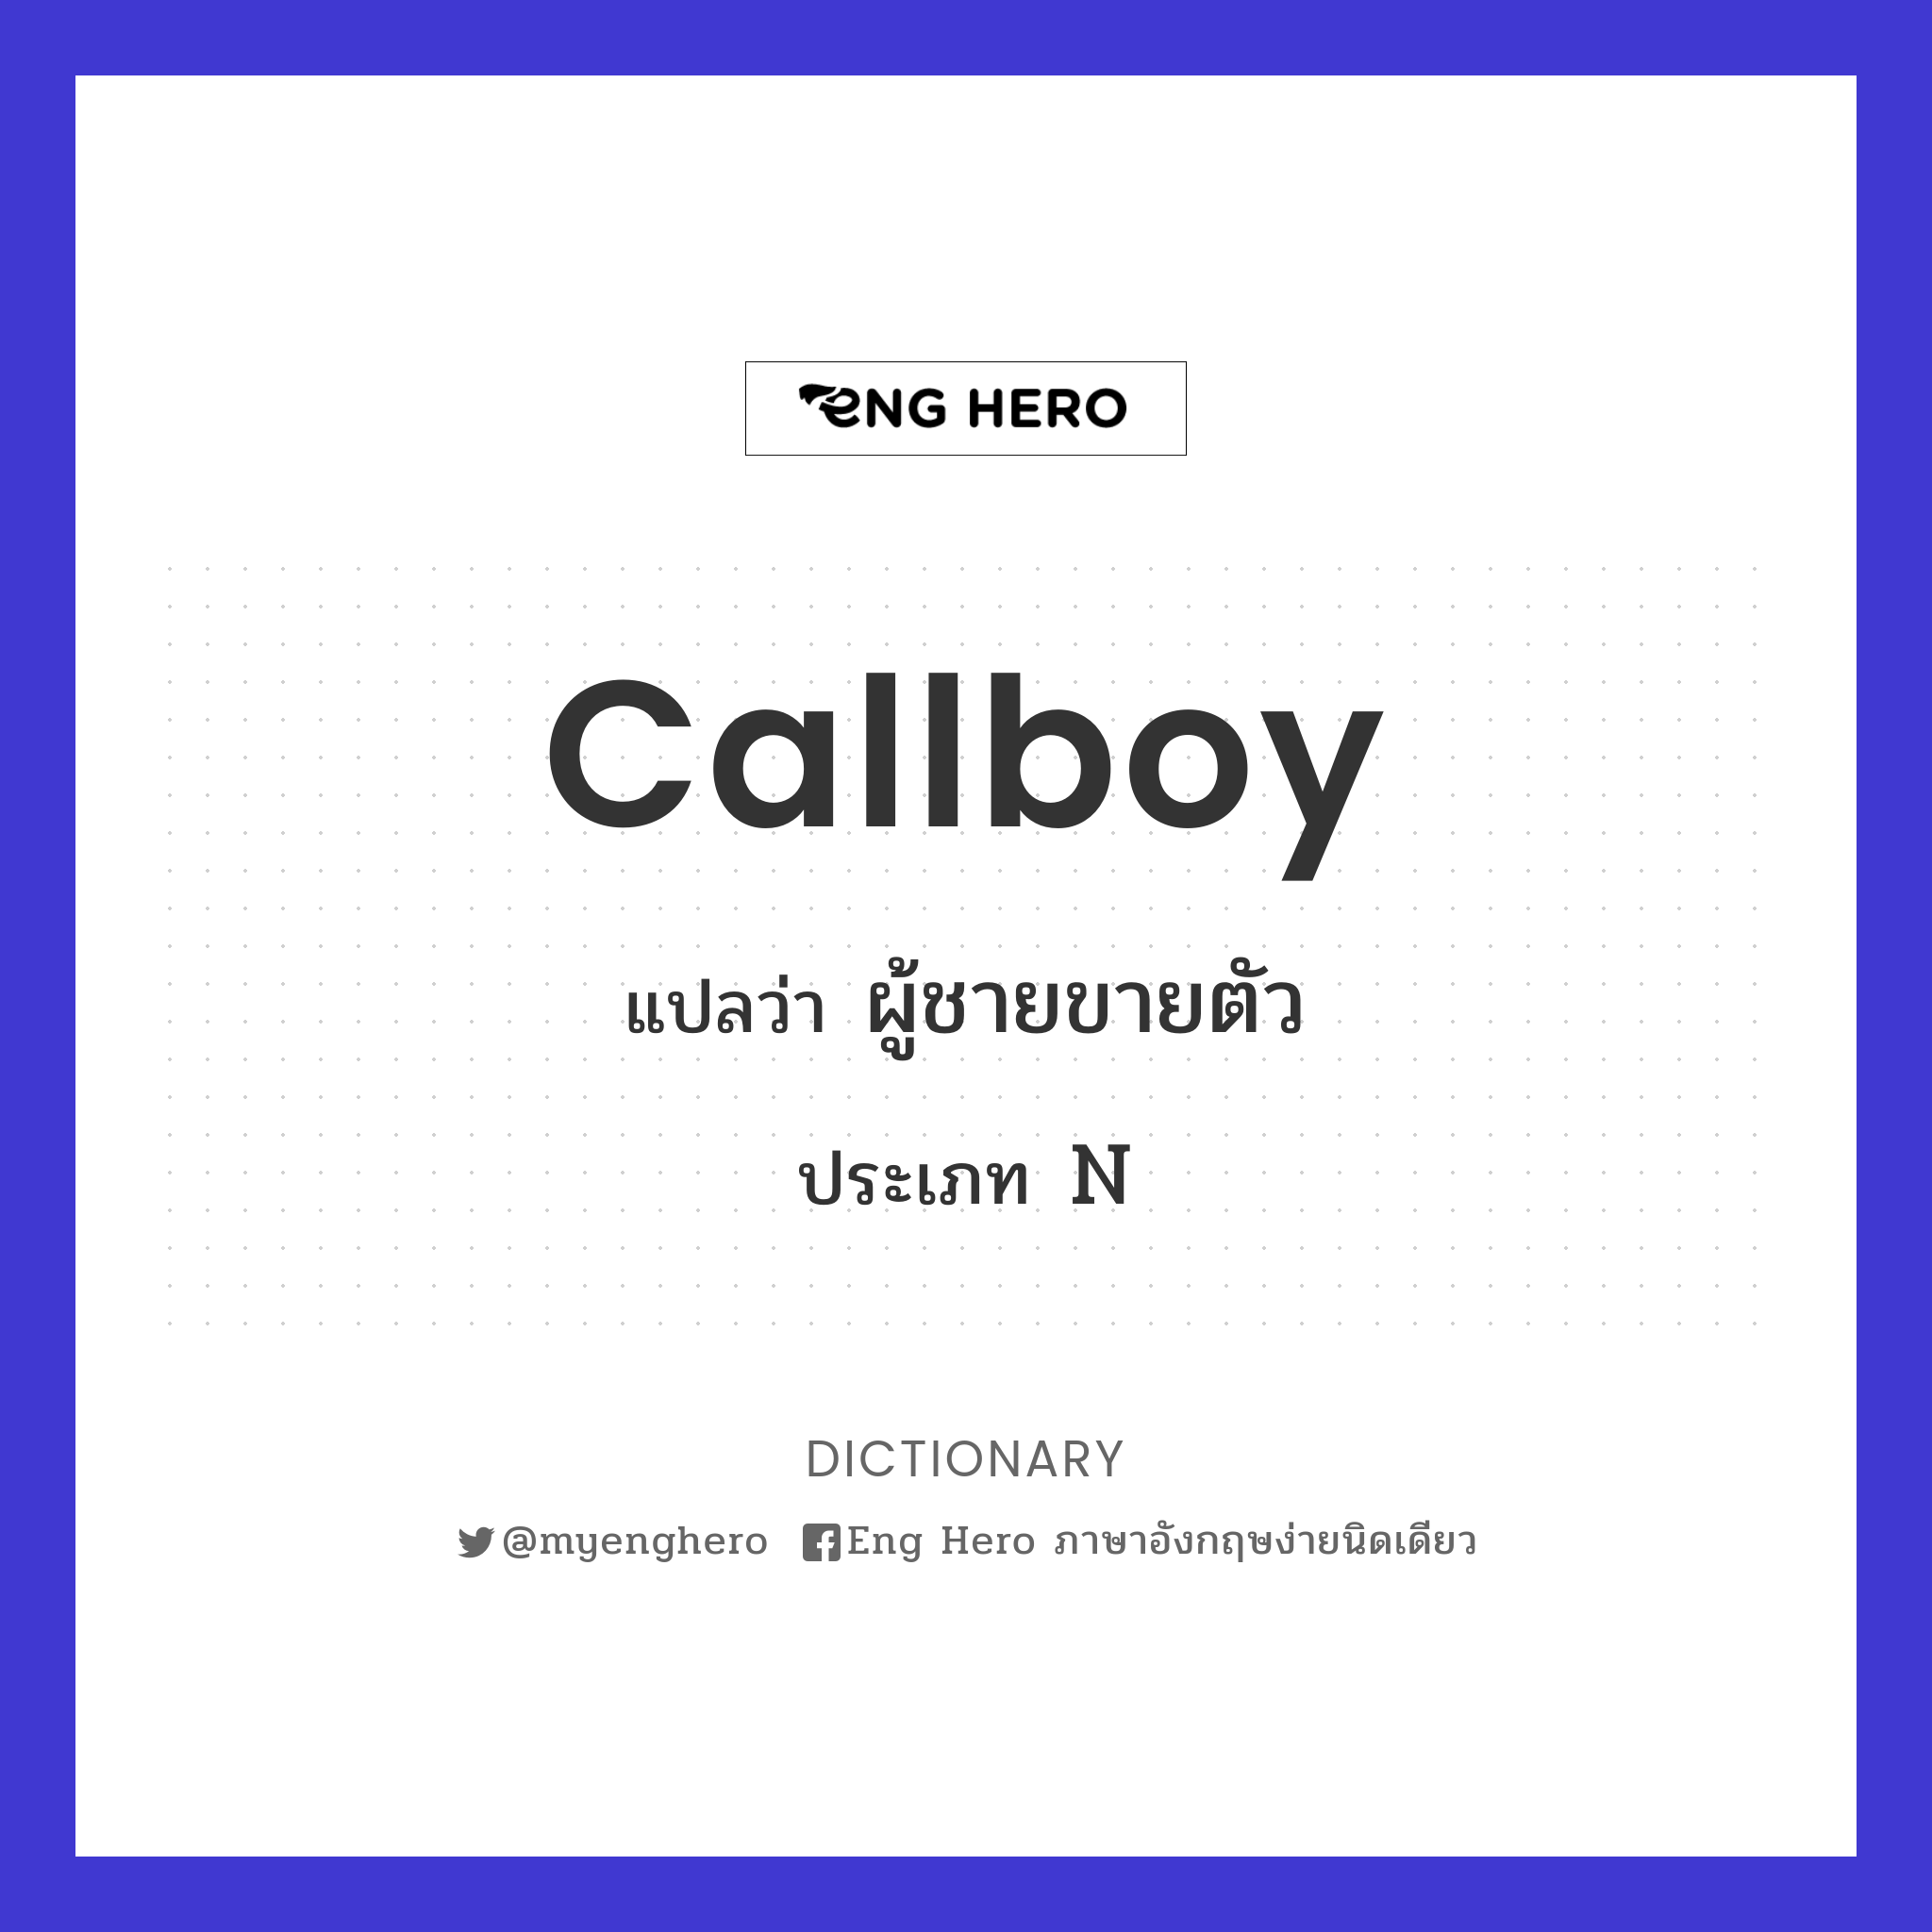 callboy